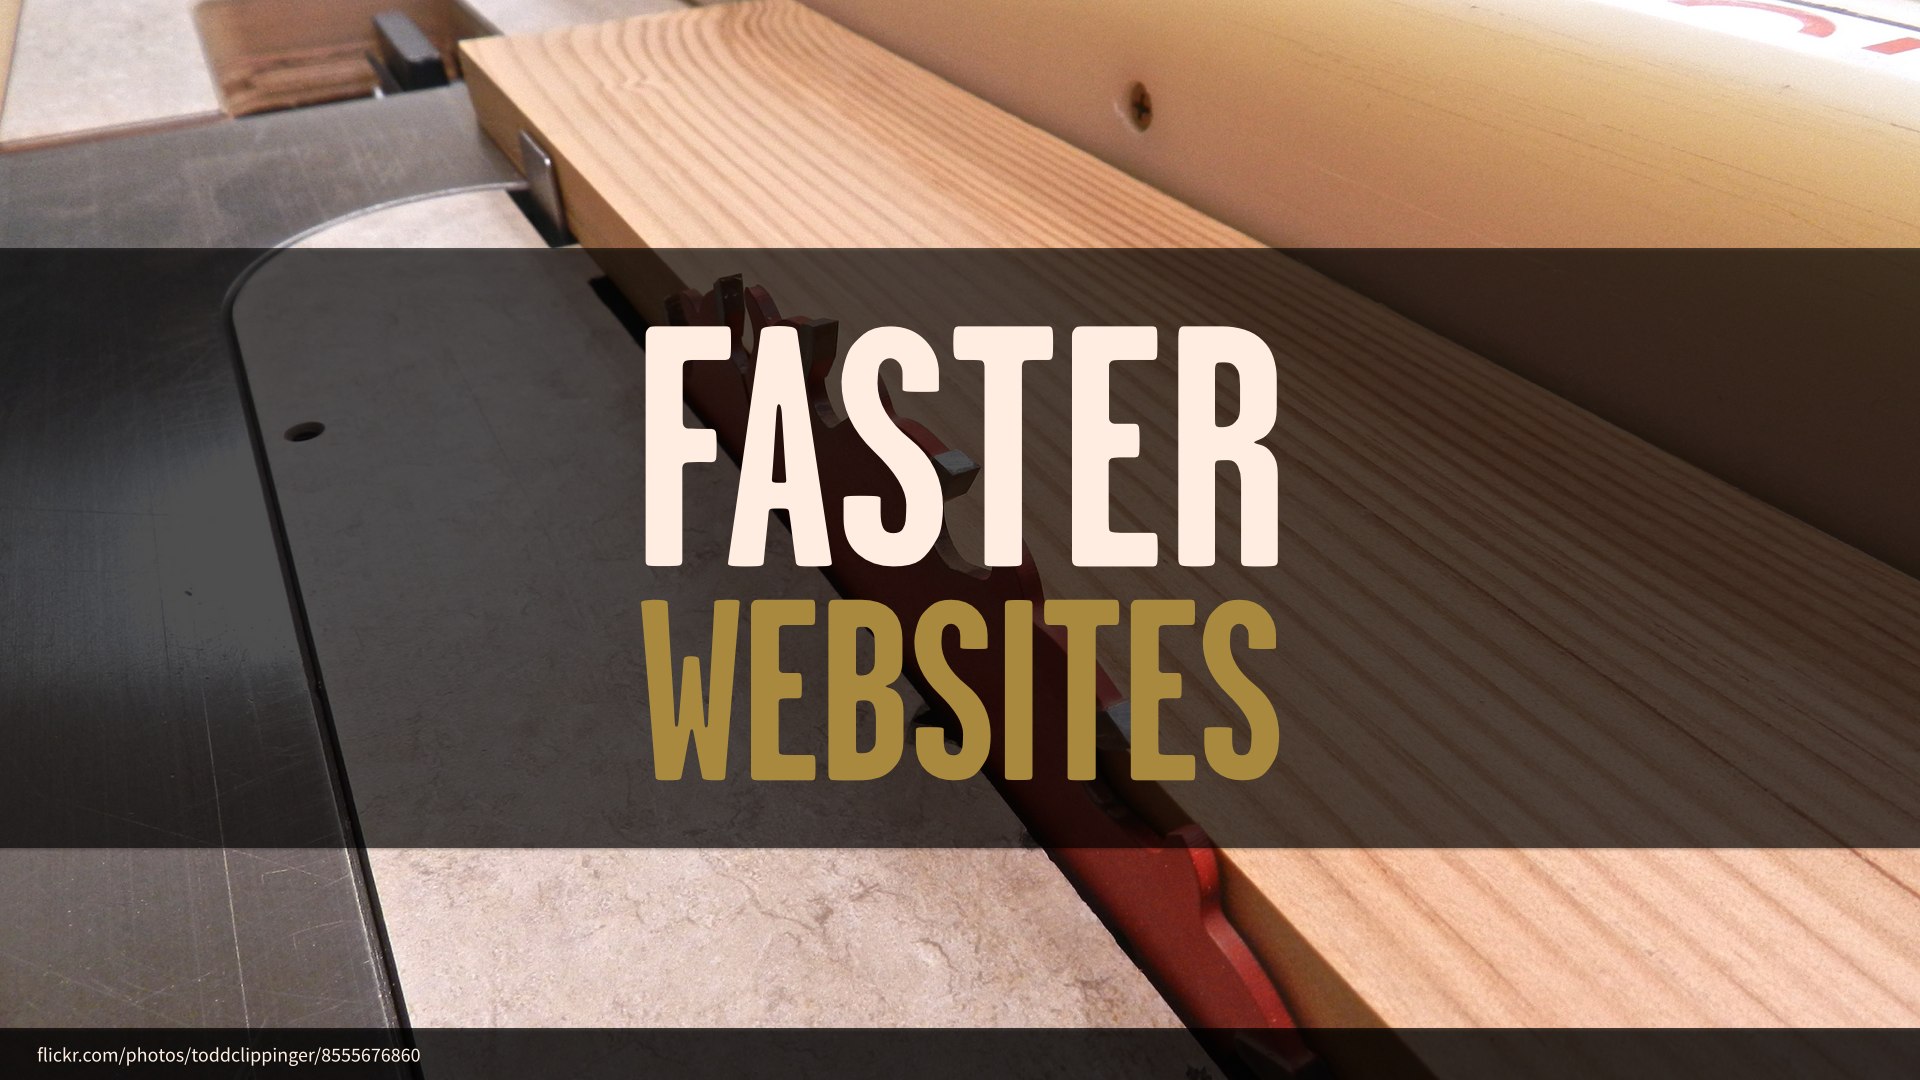 Faster Websites